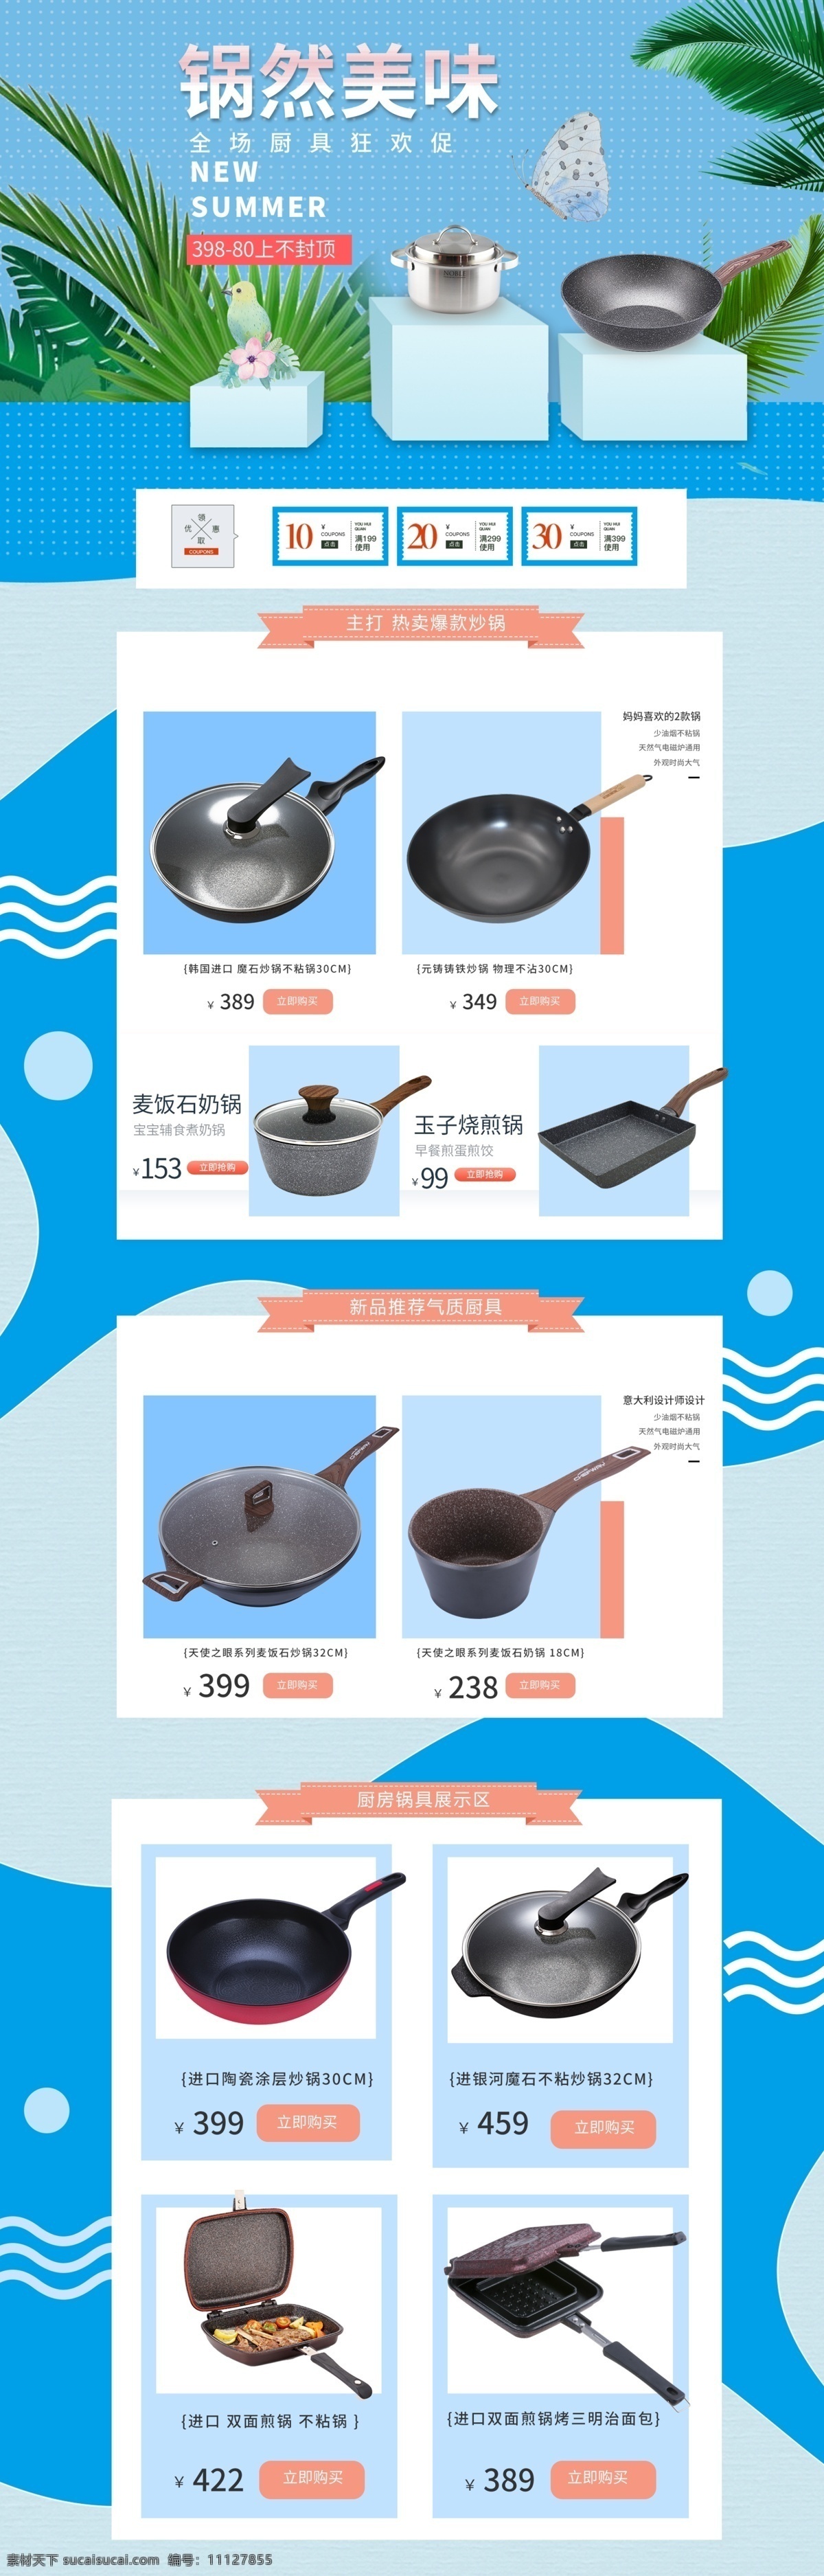 锅 具 首页 蓝色 清新 4d 风 美味 烹饪 美食 促销 锅具 炒锅 煎锅 满减 活动